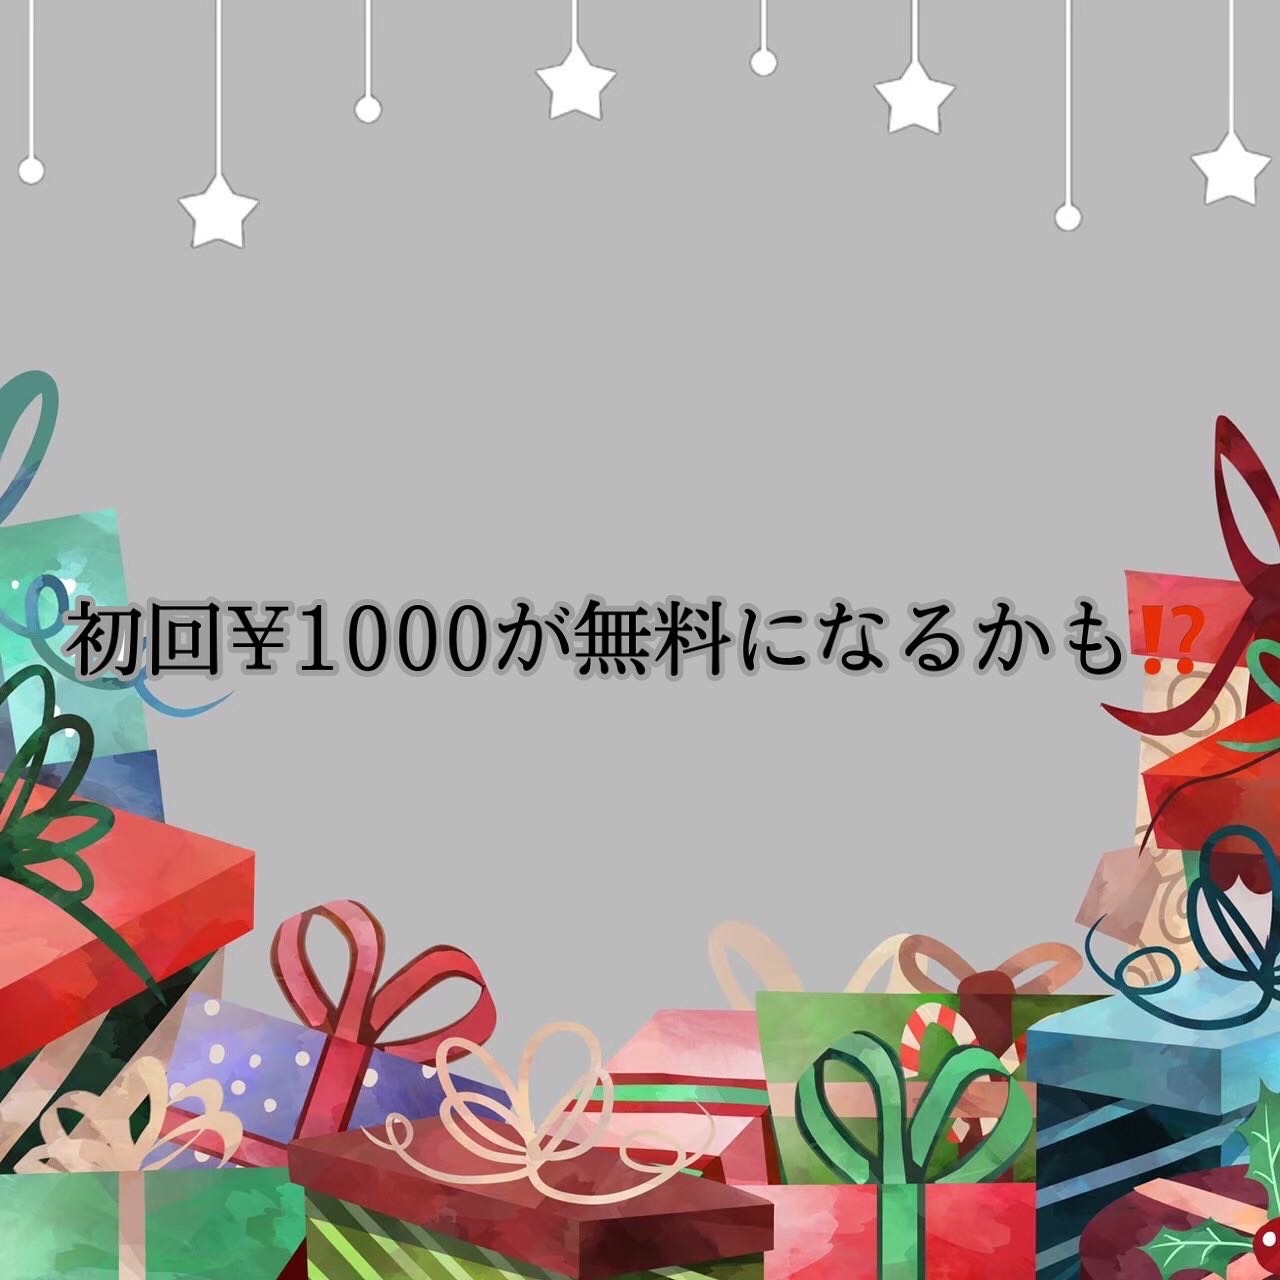 初回¥1,000-が無料になるかも?!のサムネイル画像